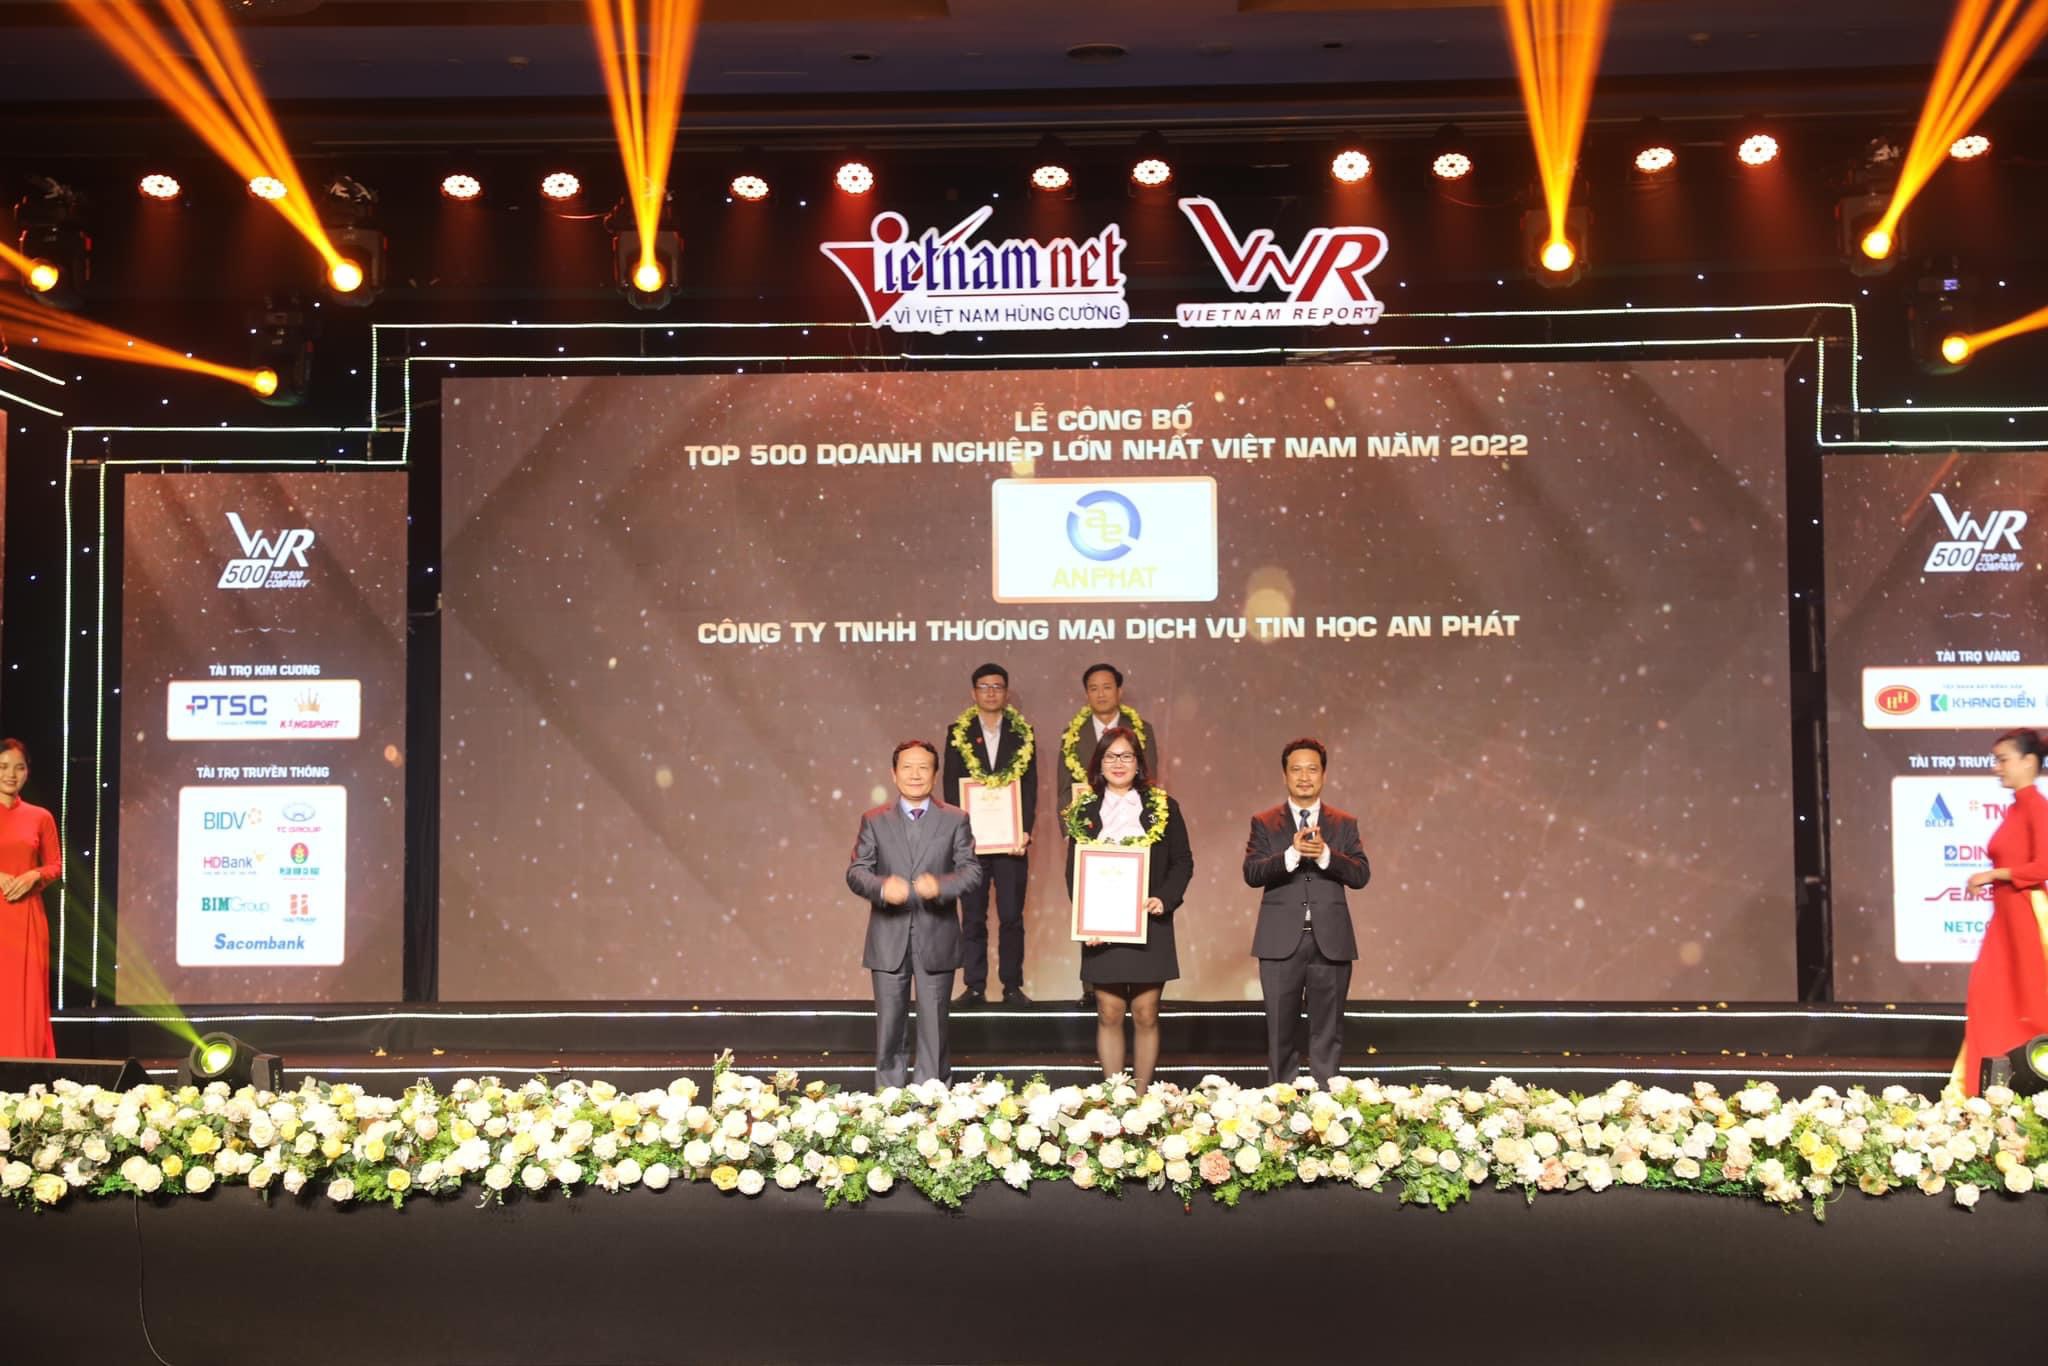 An Phát Computer – Từng bước khẳng định vị thế trong Top 500 doanh nghiệp lớn nhất Việt Nam